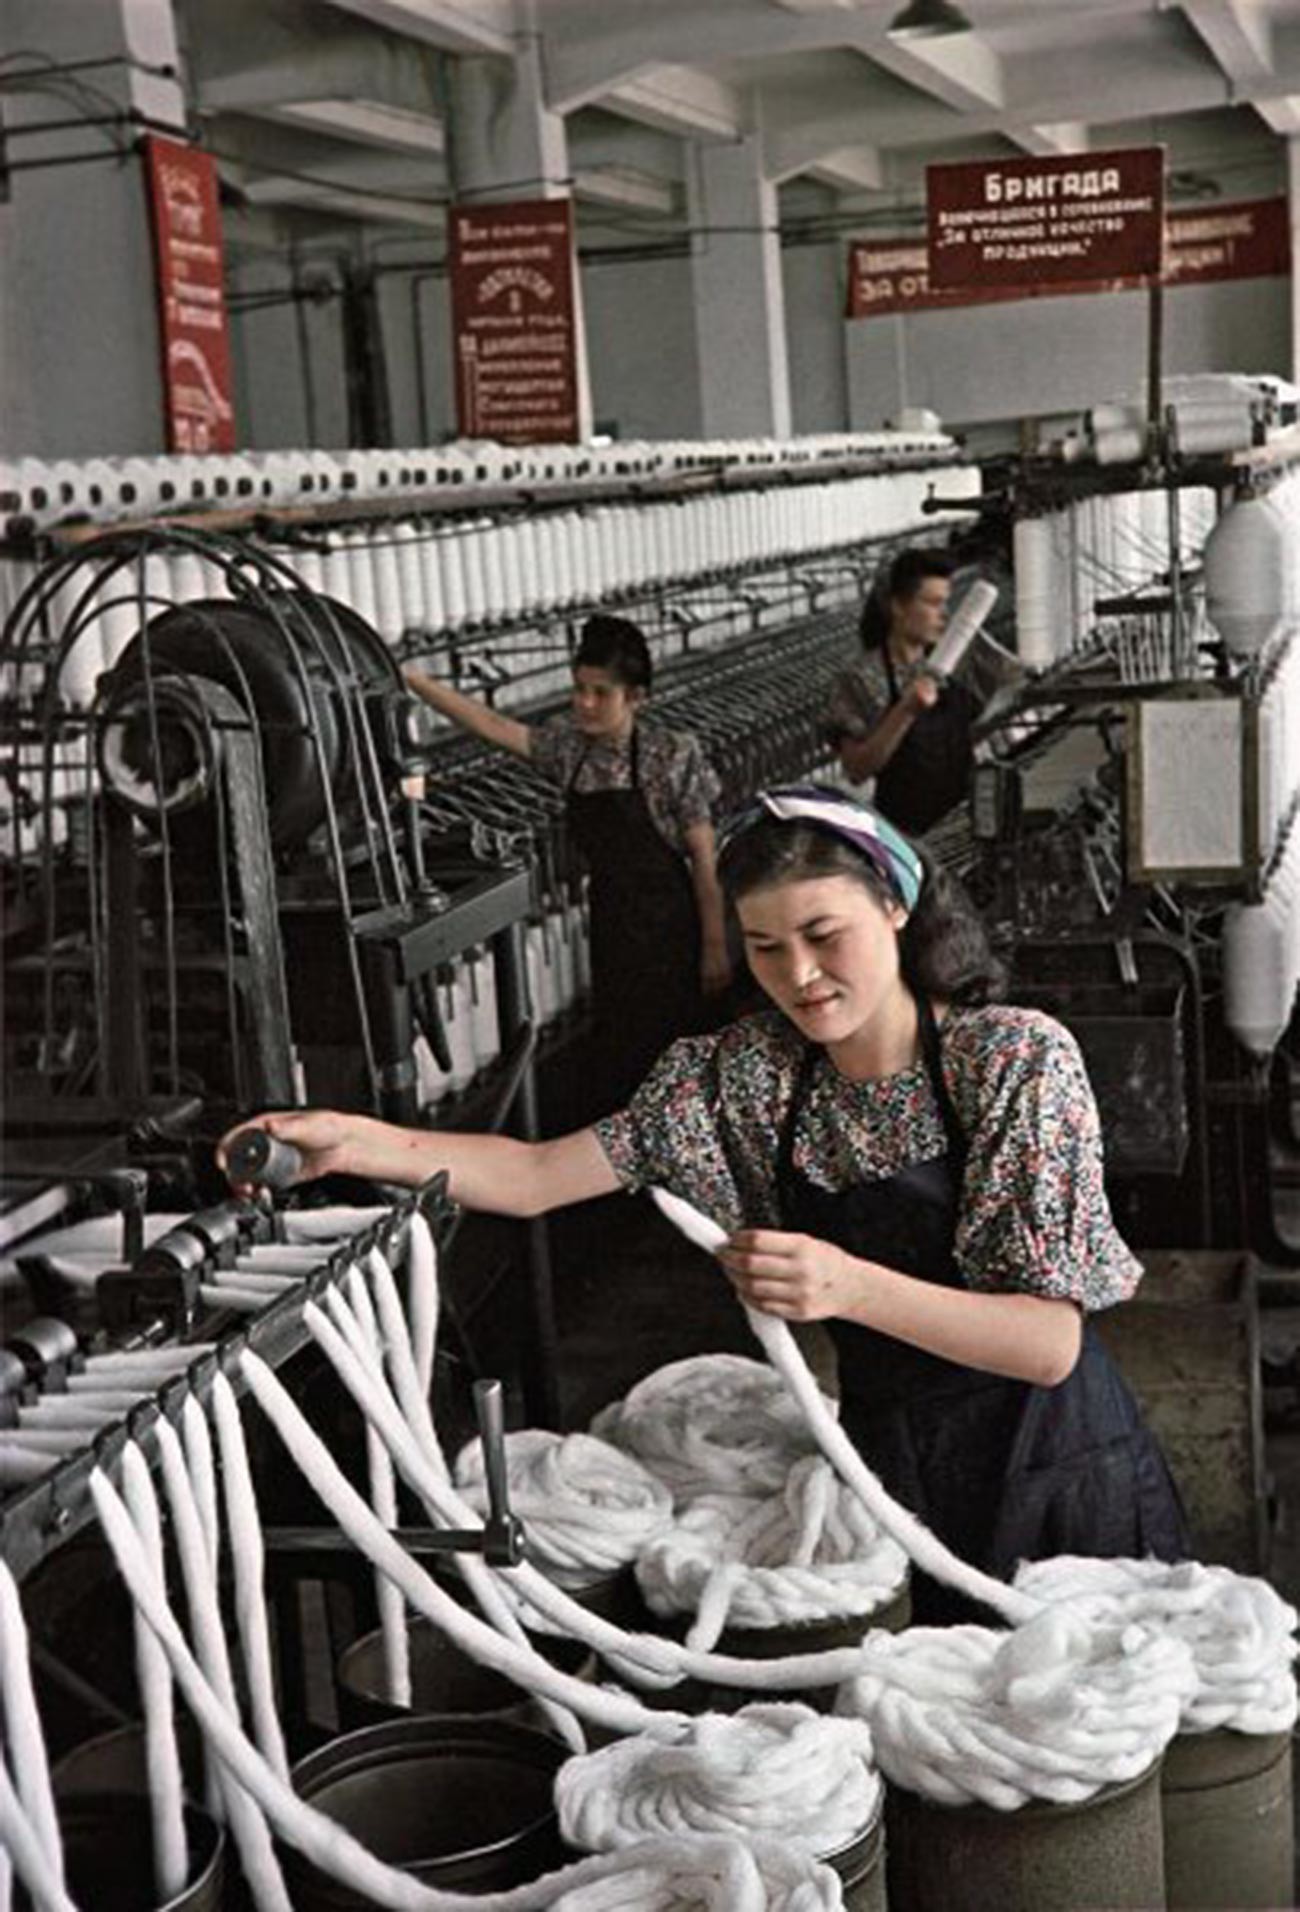 アルマトイ綿紡績工場準備部門の紐製造スタハノフ運動者、マリア・ナシリバエワ。彼女は孤児院の保母でもあった。班の友人らとともに、ノルマを200パーセント上回った。「オゴニョーク」誌アーカイブ。1950年。